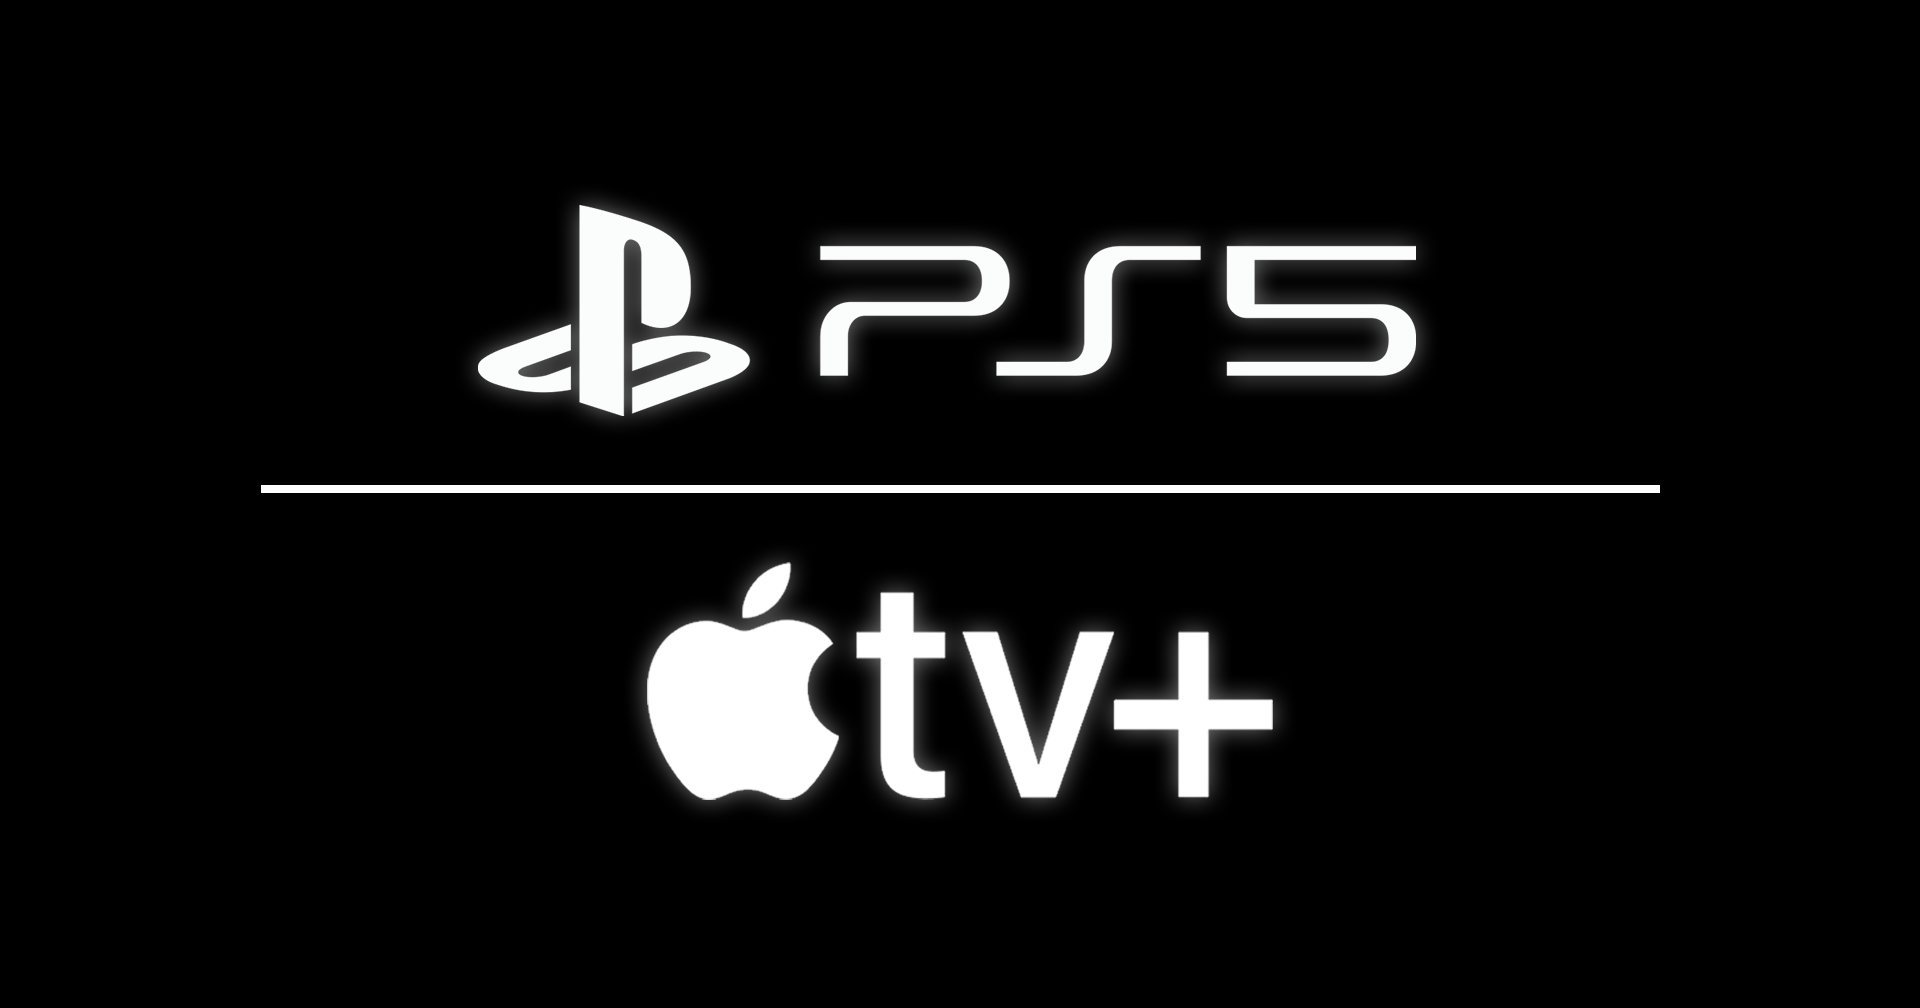 Playstation แจกสมาชิก Apple TV + ให้กับผู้ใช้งาน PS5 ฟรี 6 เดือน